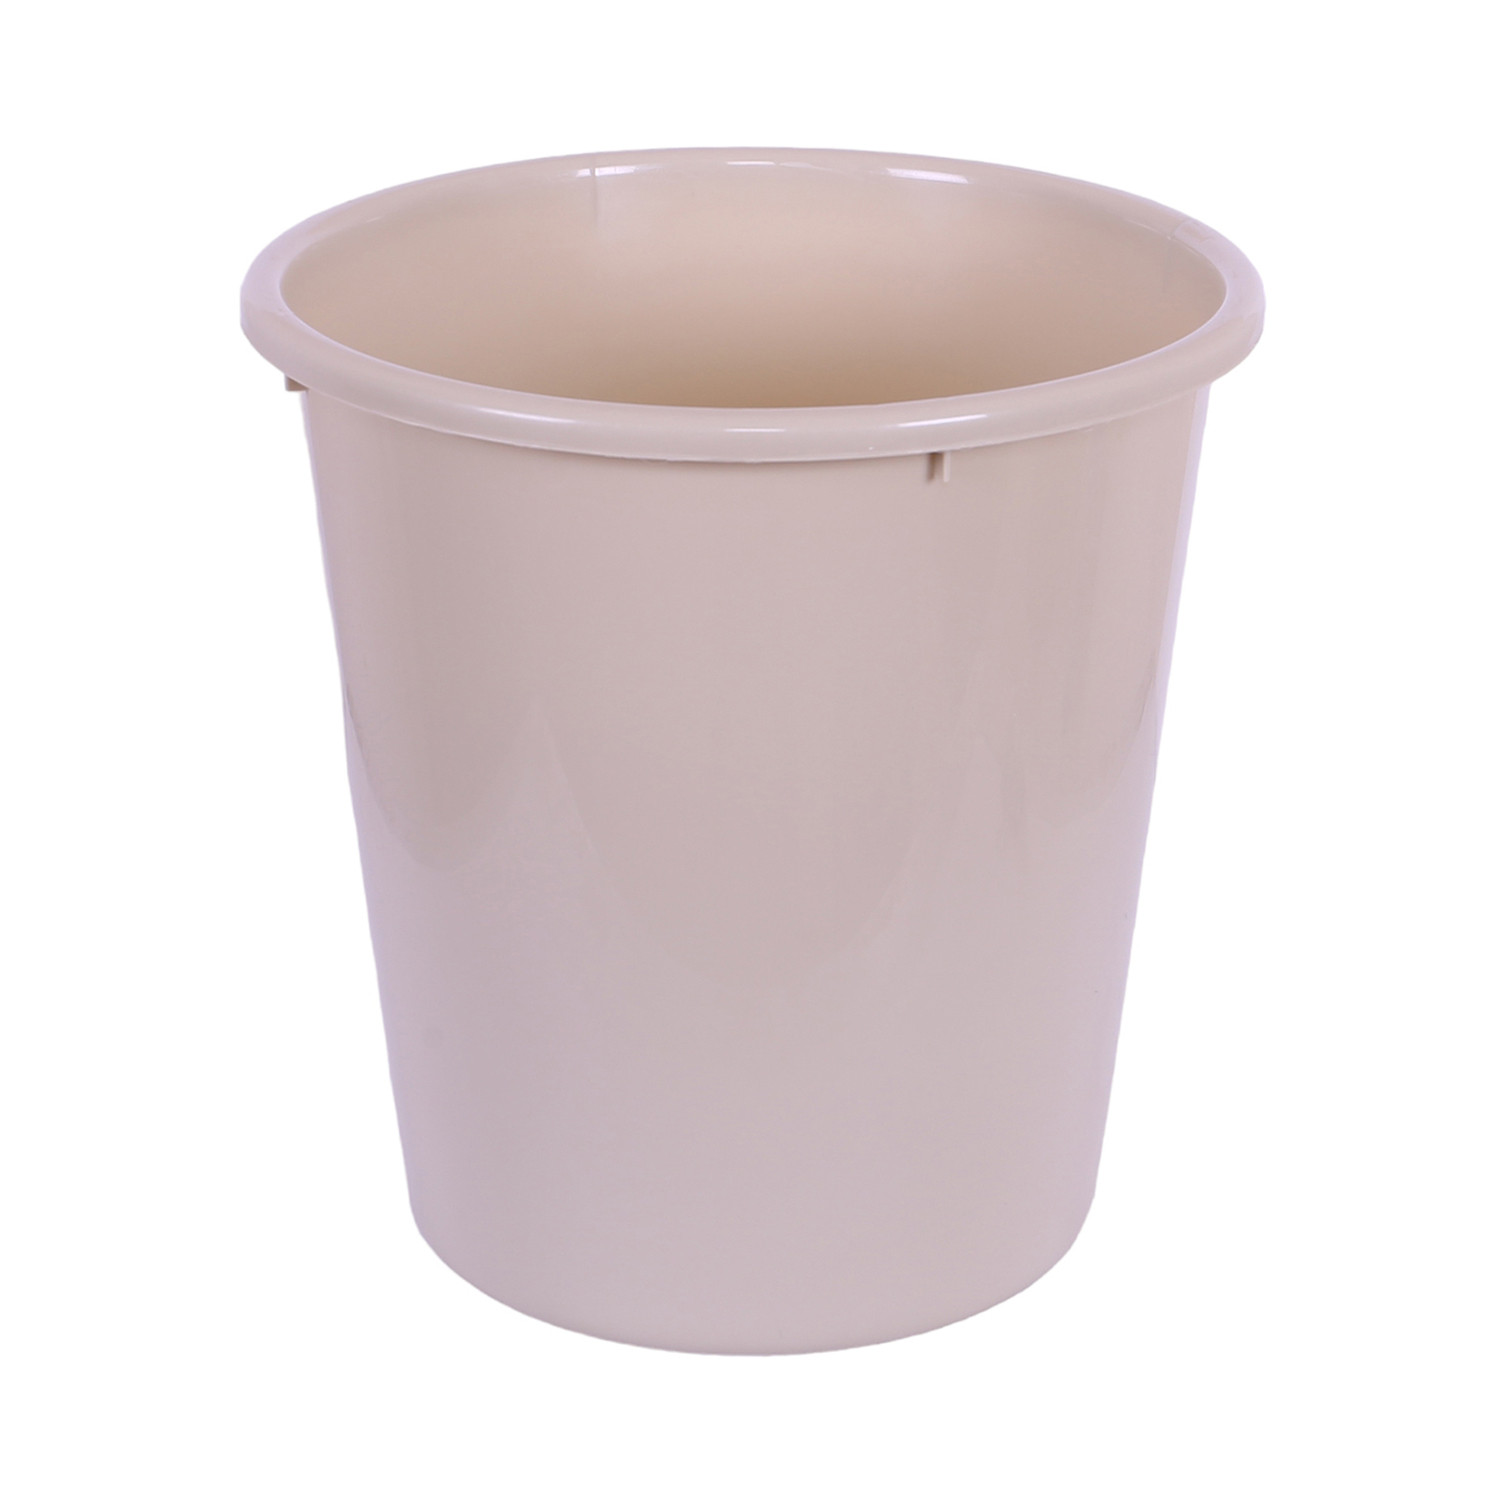 Kuber Industries Dustbin | Open Dustbin | Plastic Garbage Dustbin | Dustbin For Kitchen | Dustbin For Bathroom | Office Dustbin | Plain Sada Dustbin | 10 LTR | Beige